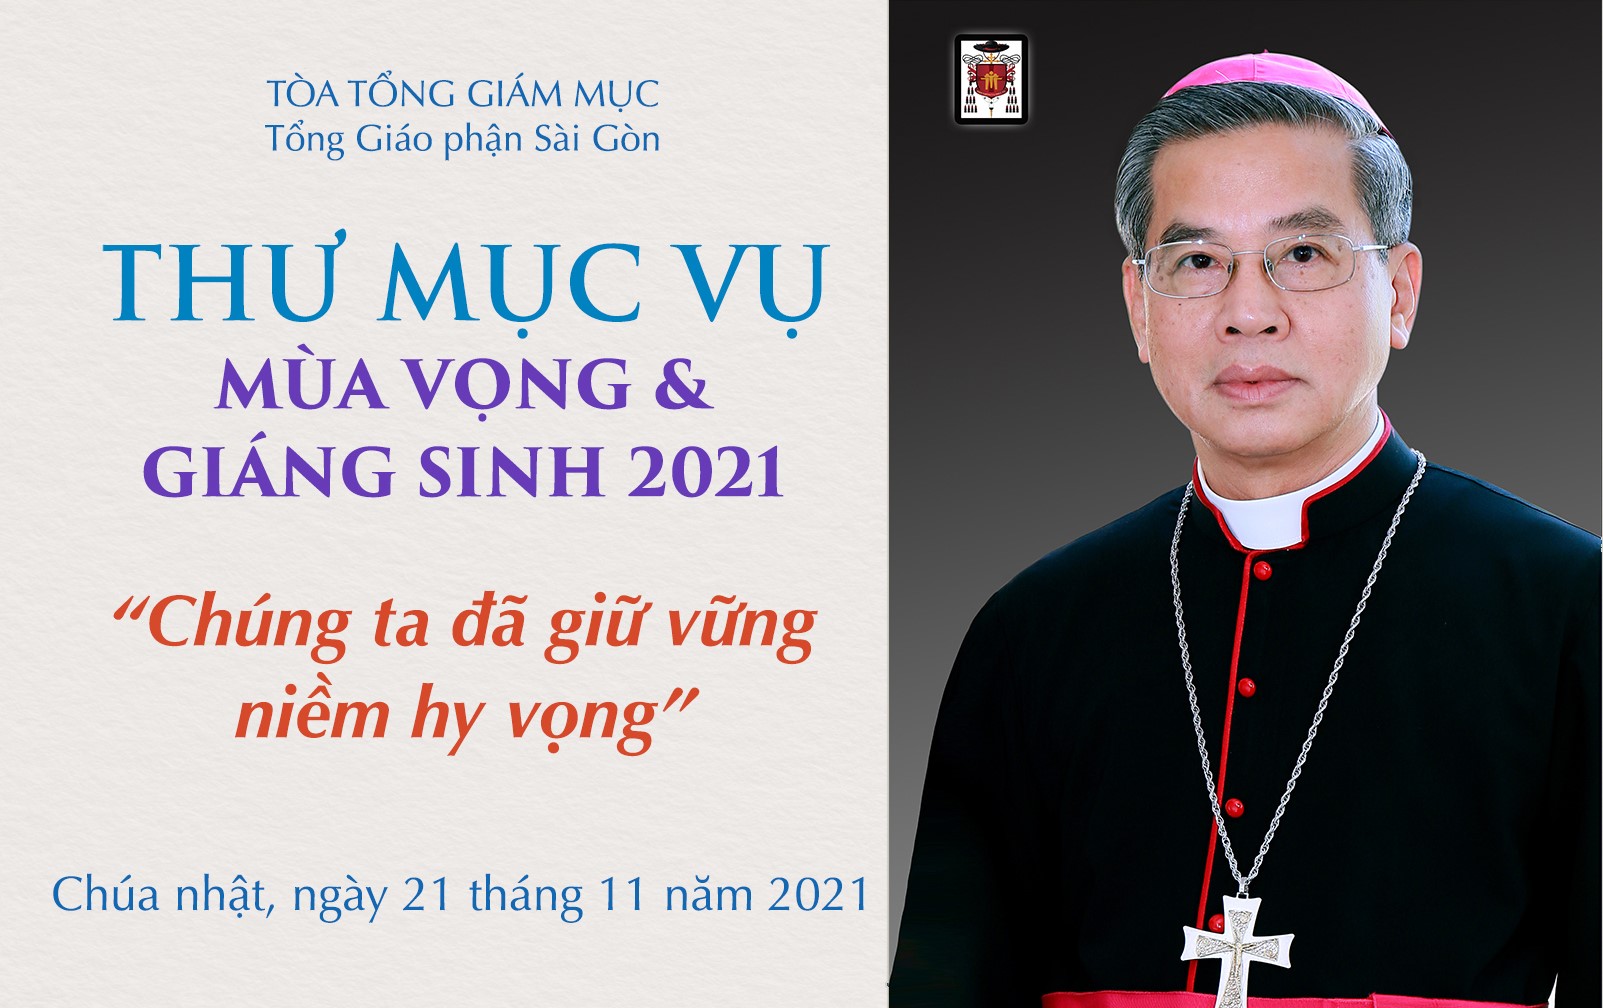 Tòa Tổng Giám mục Sài Gòn: Thư Mục vụ Mùa Vọng và Giáng Sinh 2021